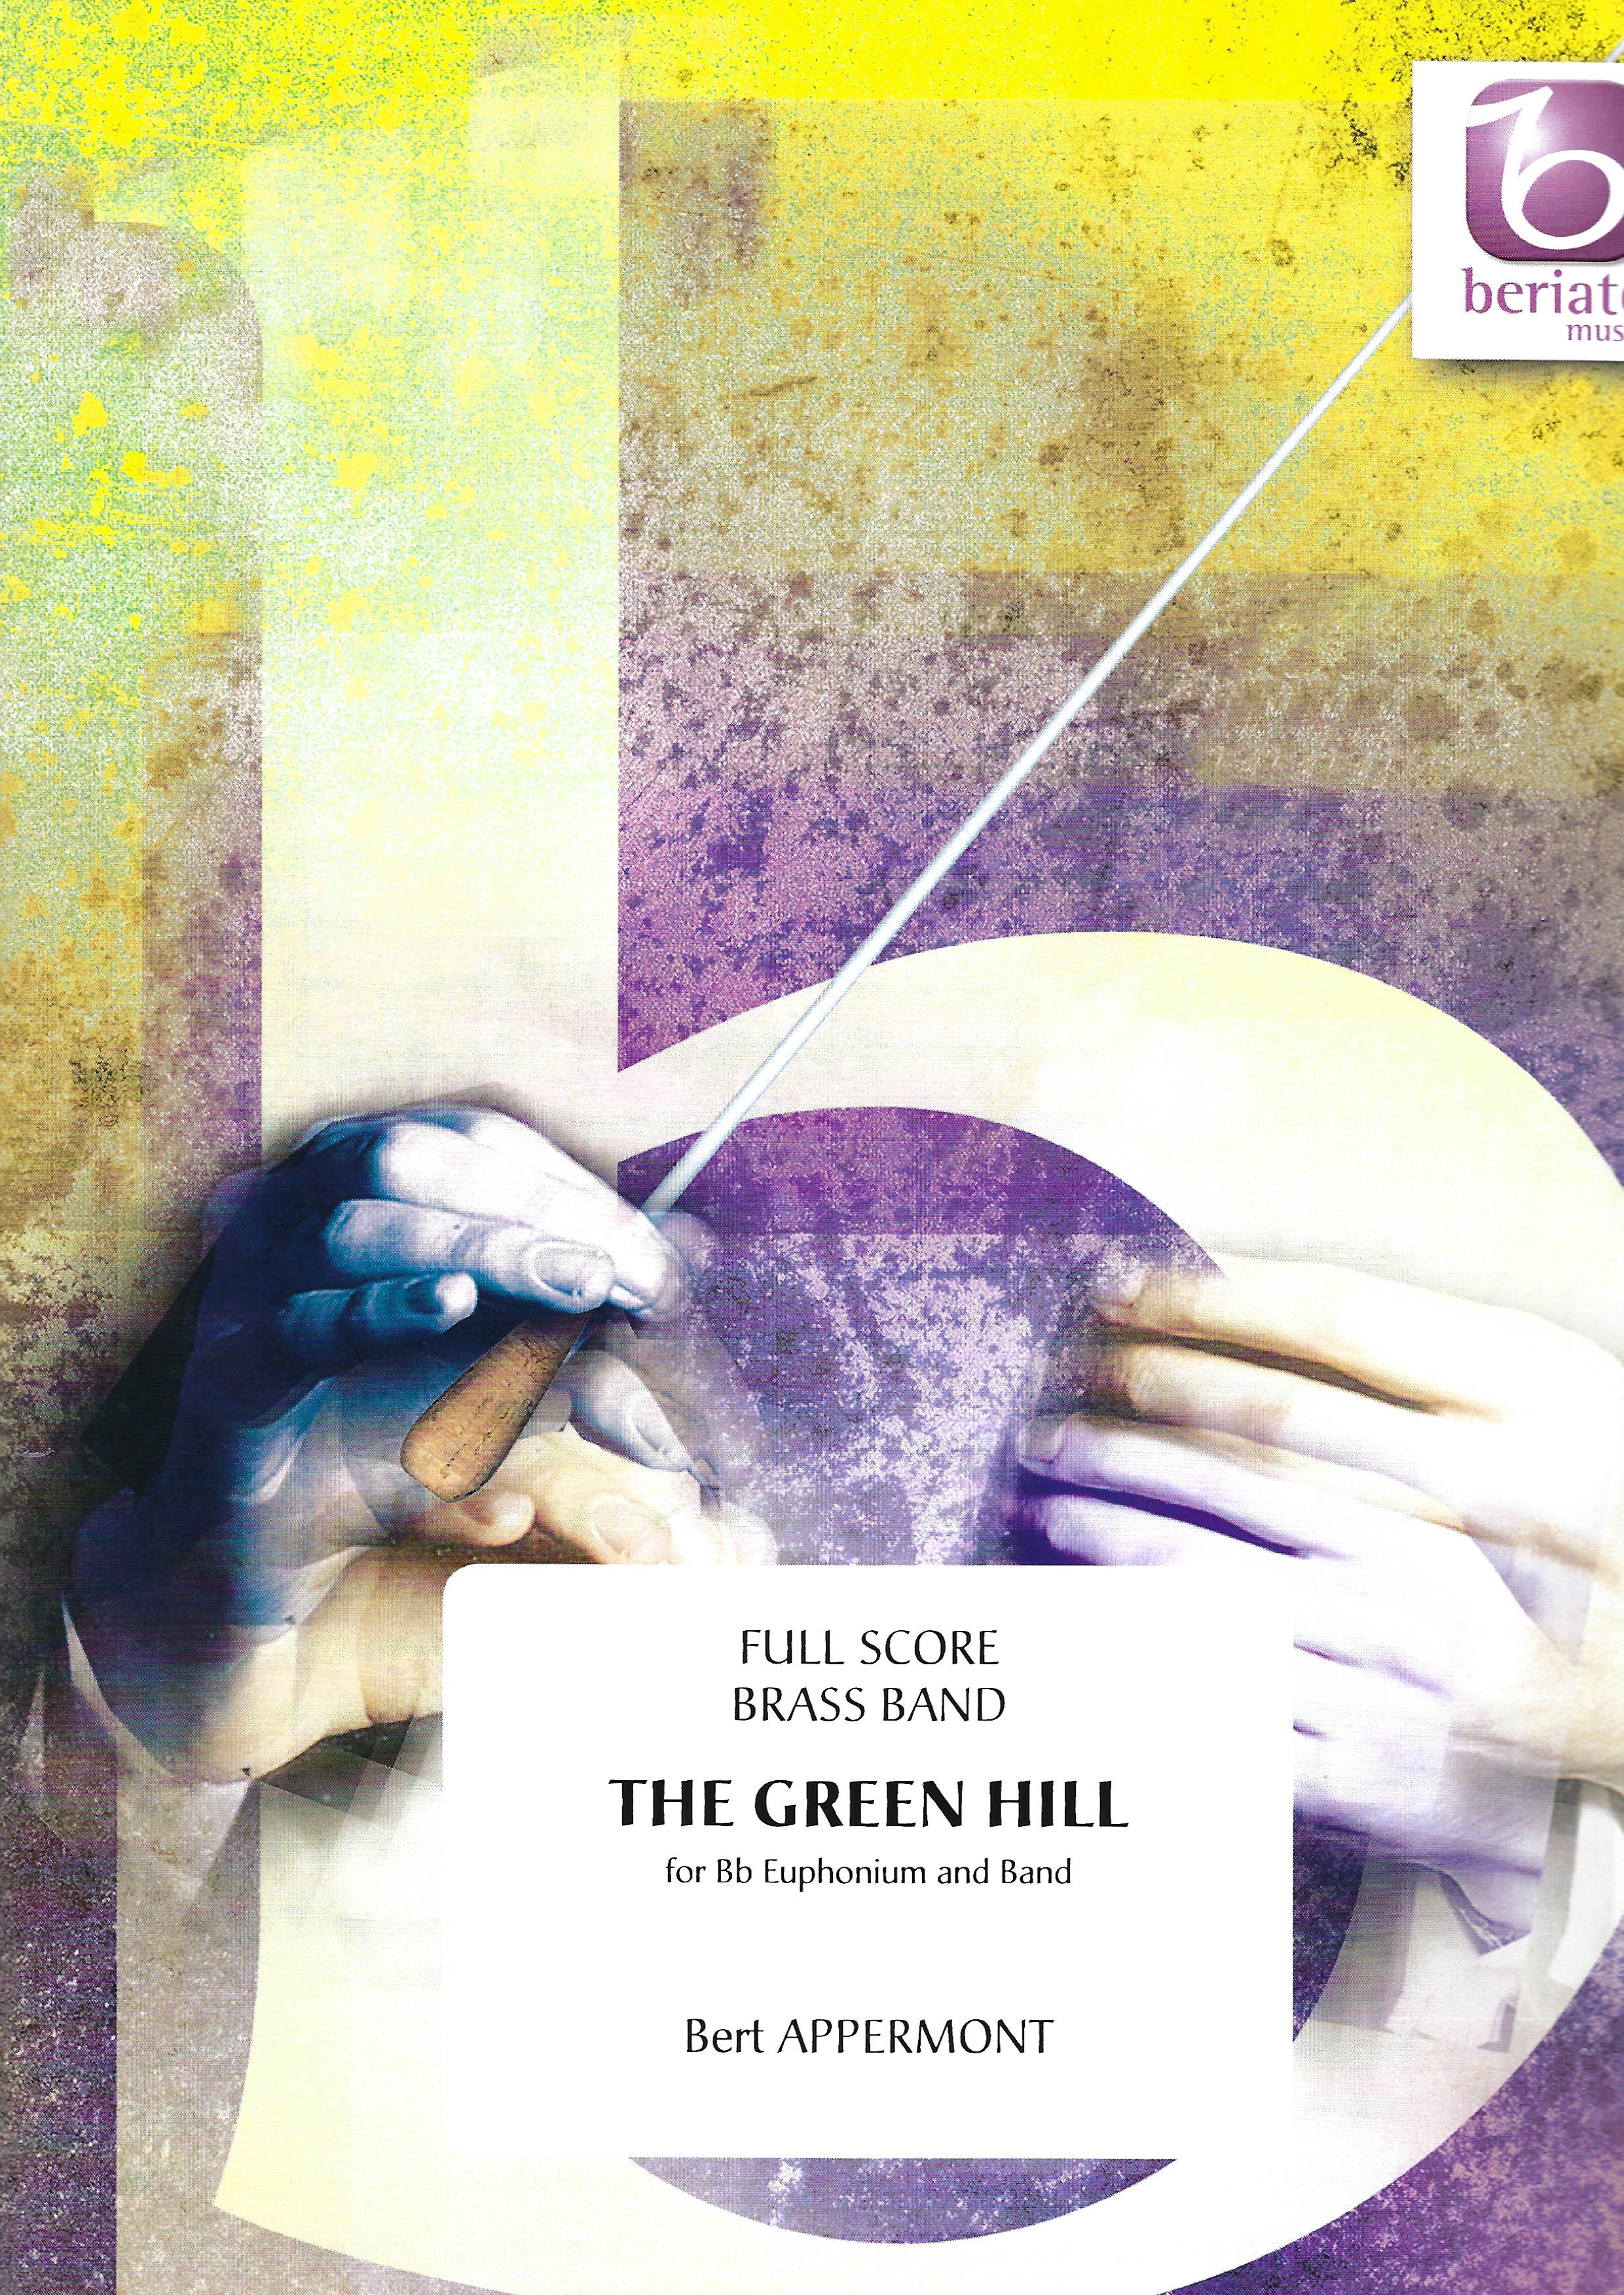 Green Hill - Bert Appermont - Euphonium with brass band accompaniment